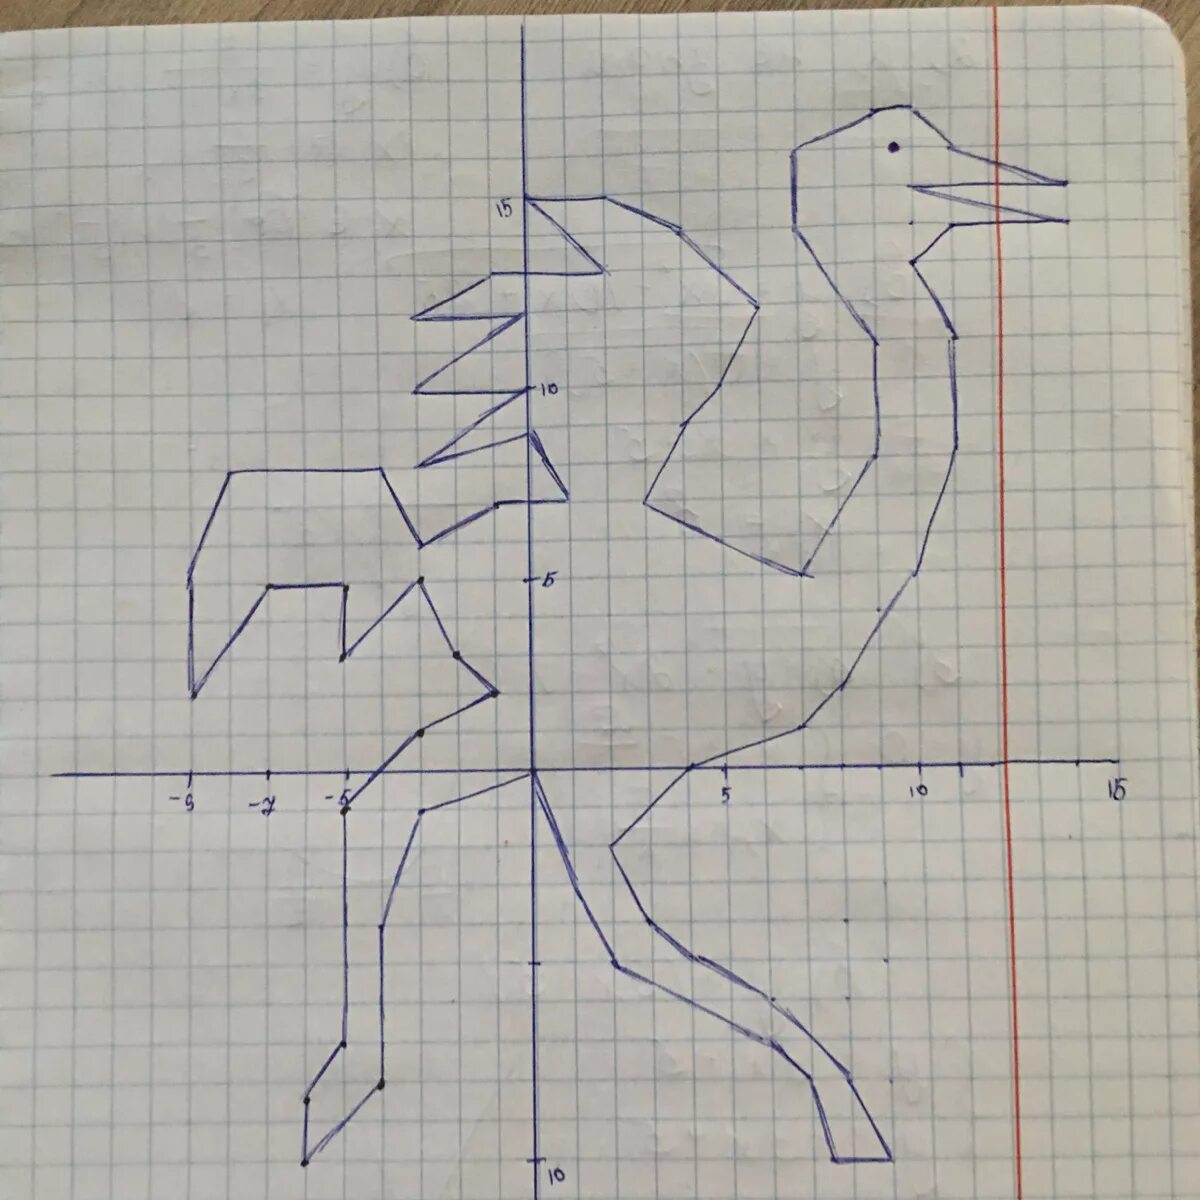 11 16 9 10 5. Страус на координатной плоскости 0 0 -1 1. Рисунок по координатам страус. Рисунок на координатной плоскости страус. Страус 0 0 -3 -1.